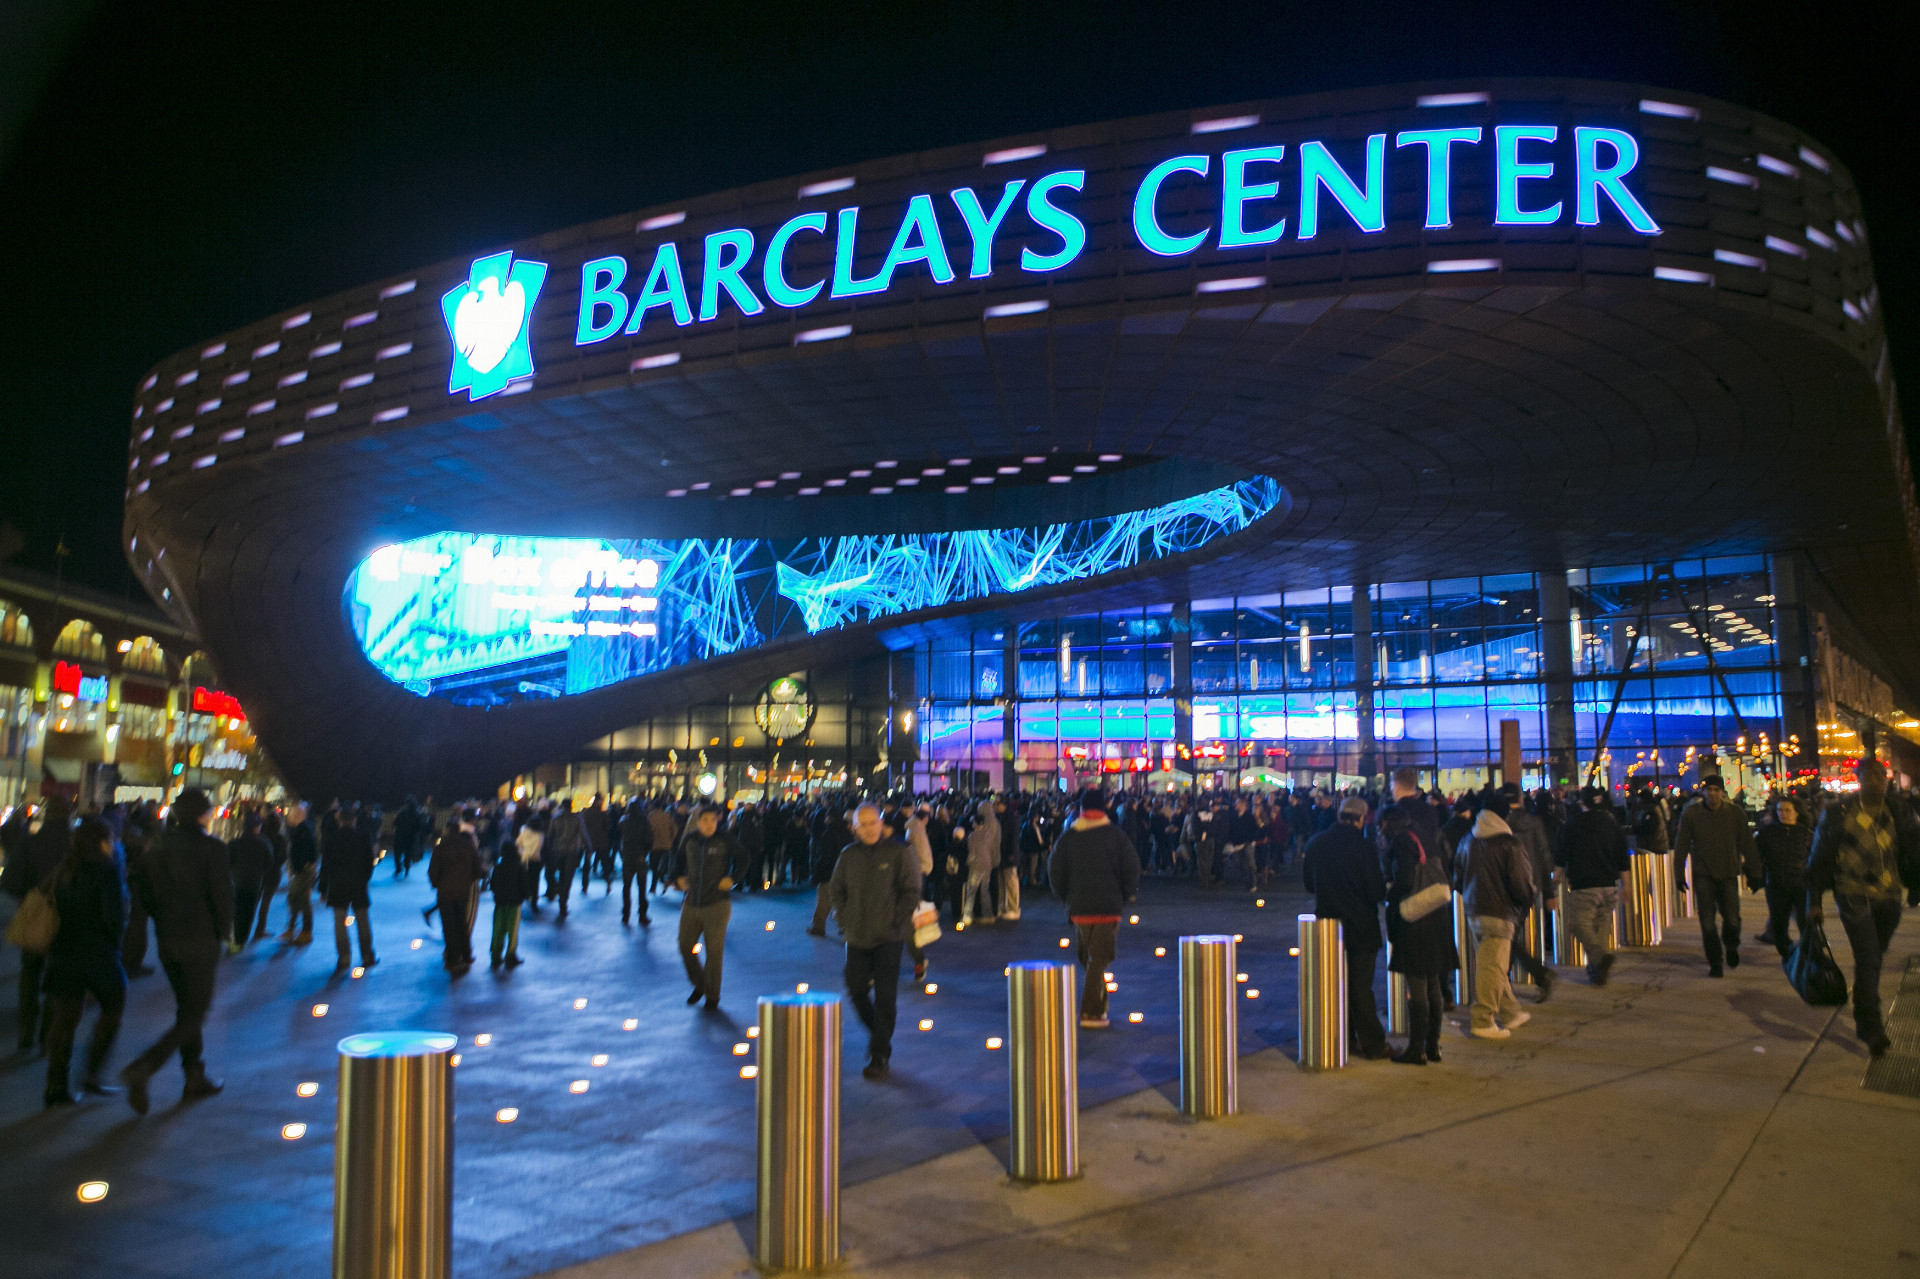 Multifunkčná moderná aréna Barclays Center, ktorá pojme 19-tisíc divákov, bude tiež patriť do portfólia nového vlastníka.